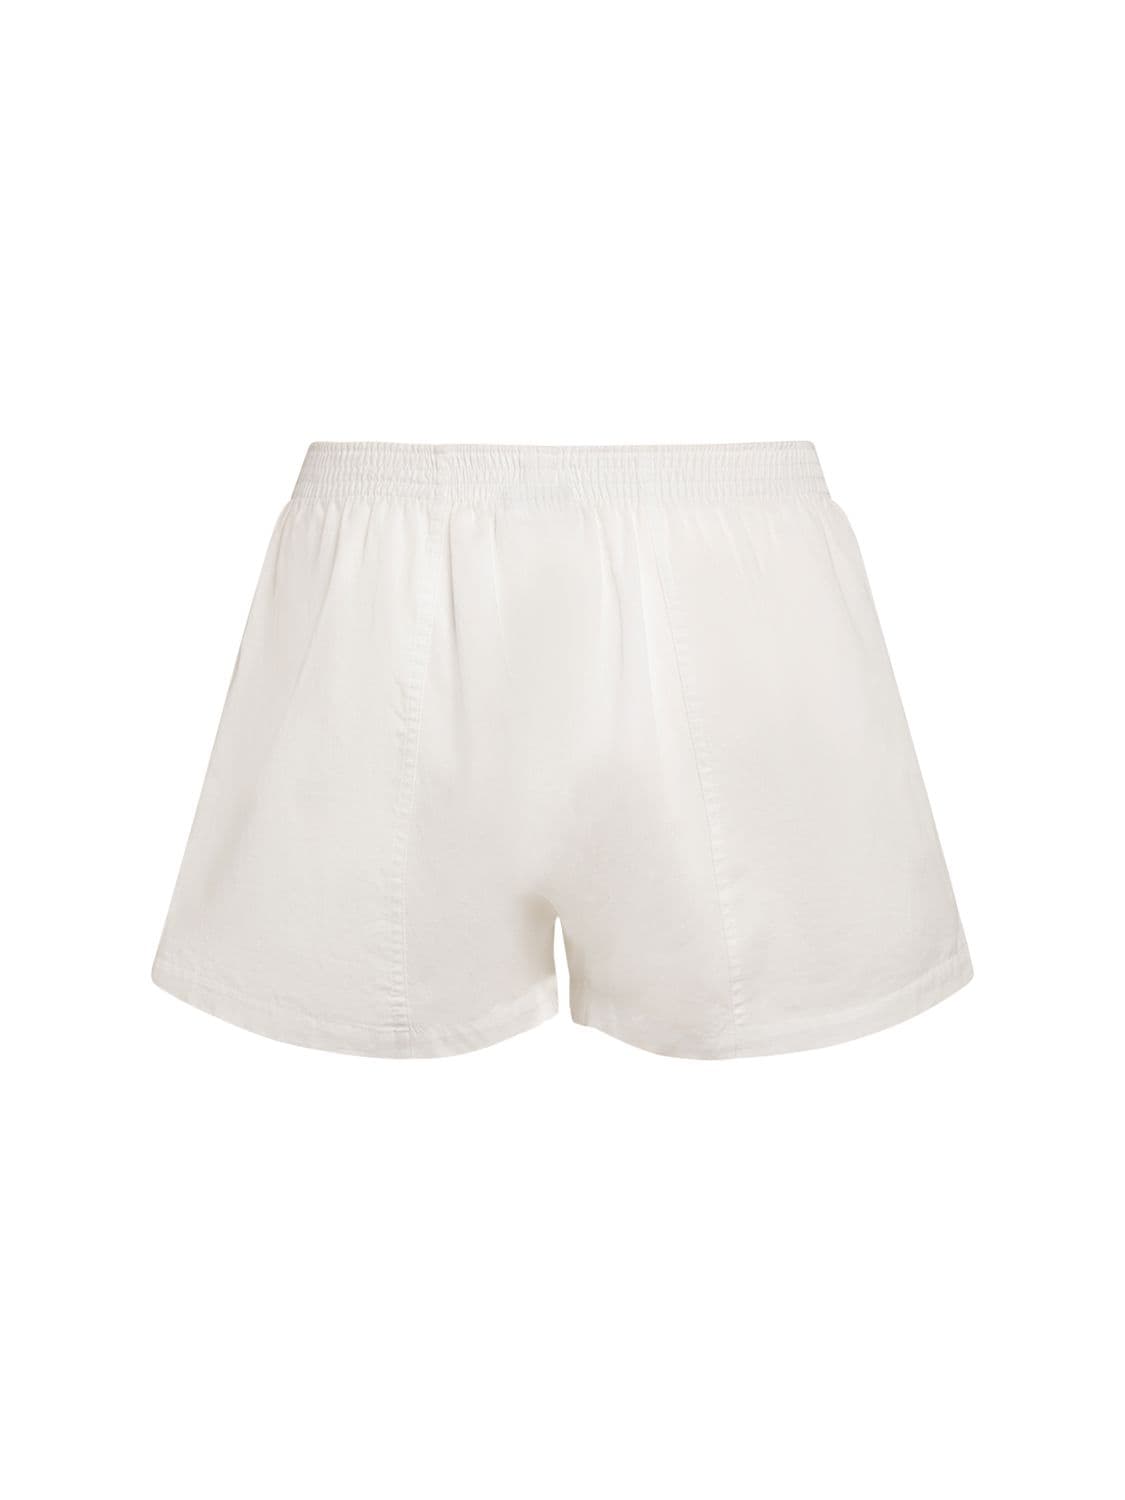 Jacquemus 'Le Calecon' shorts, Men's Clothing